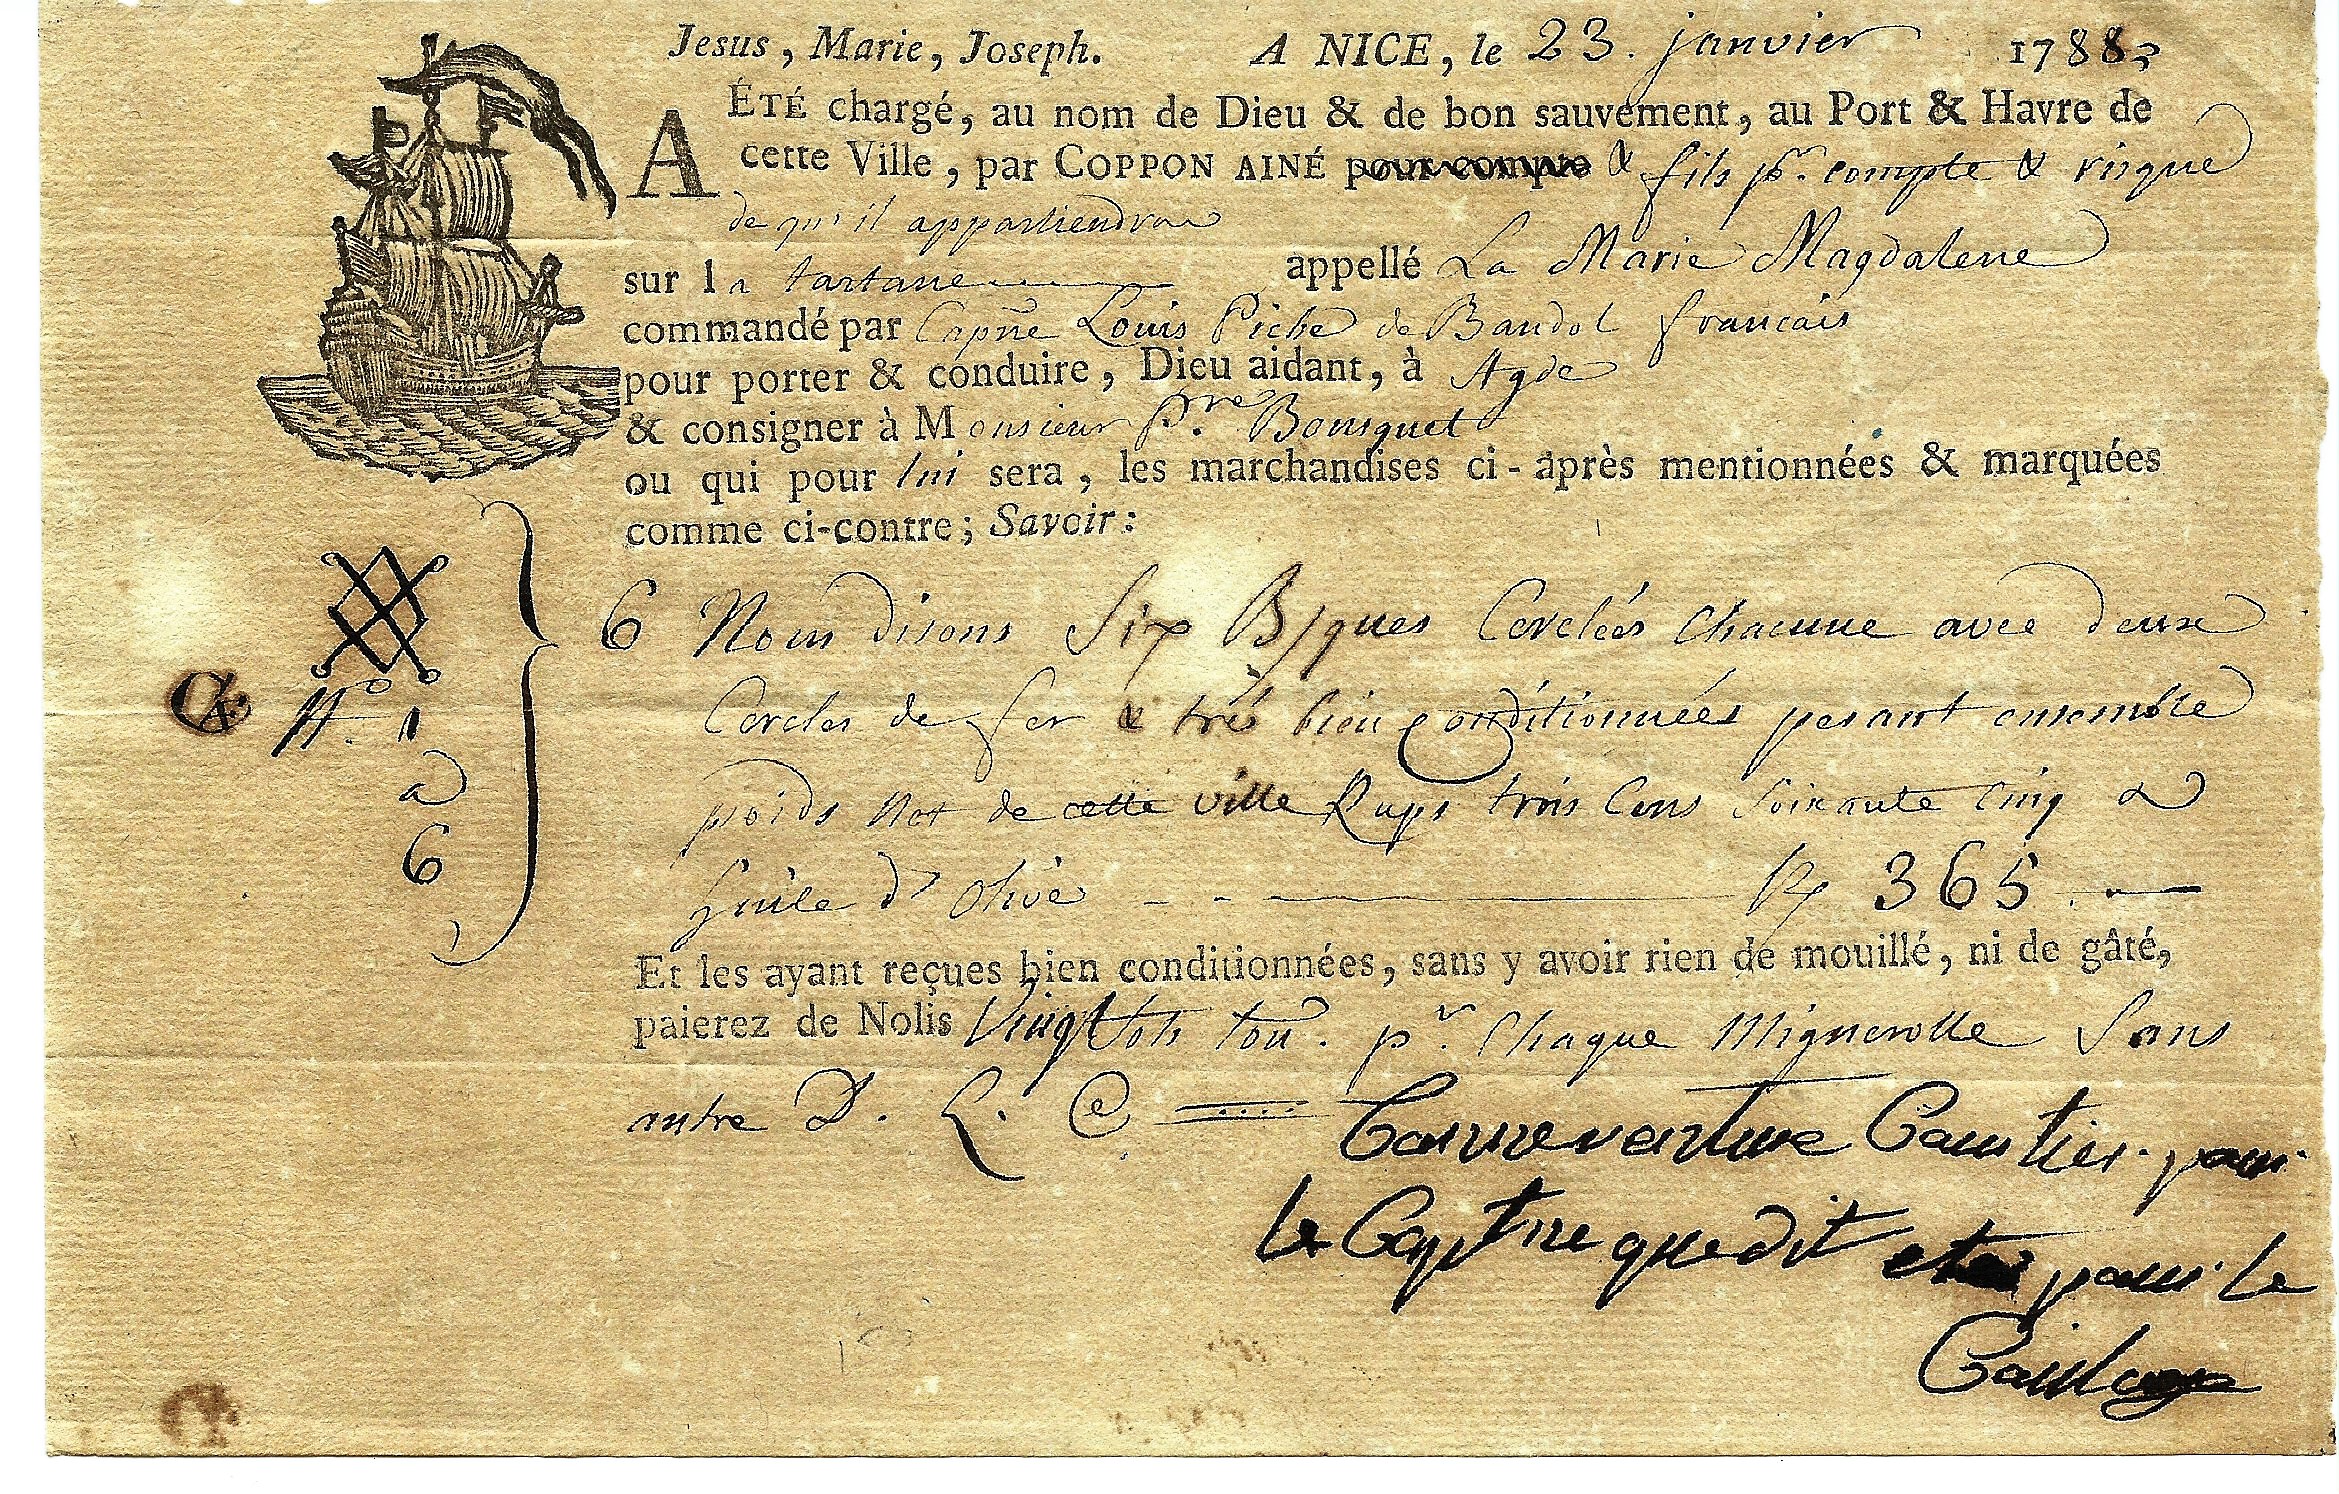 1788 23 Gennaio da Nice a Agde, con gilda della corporazione.